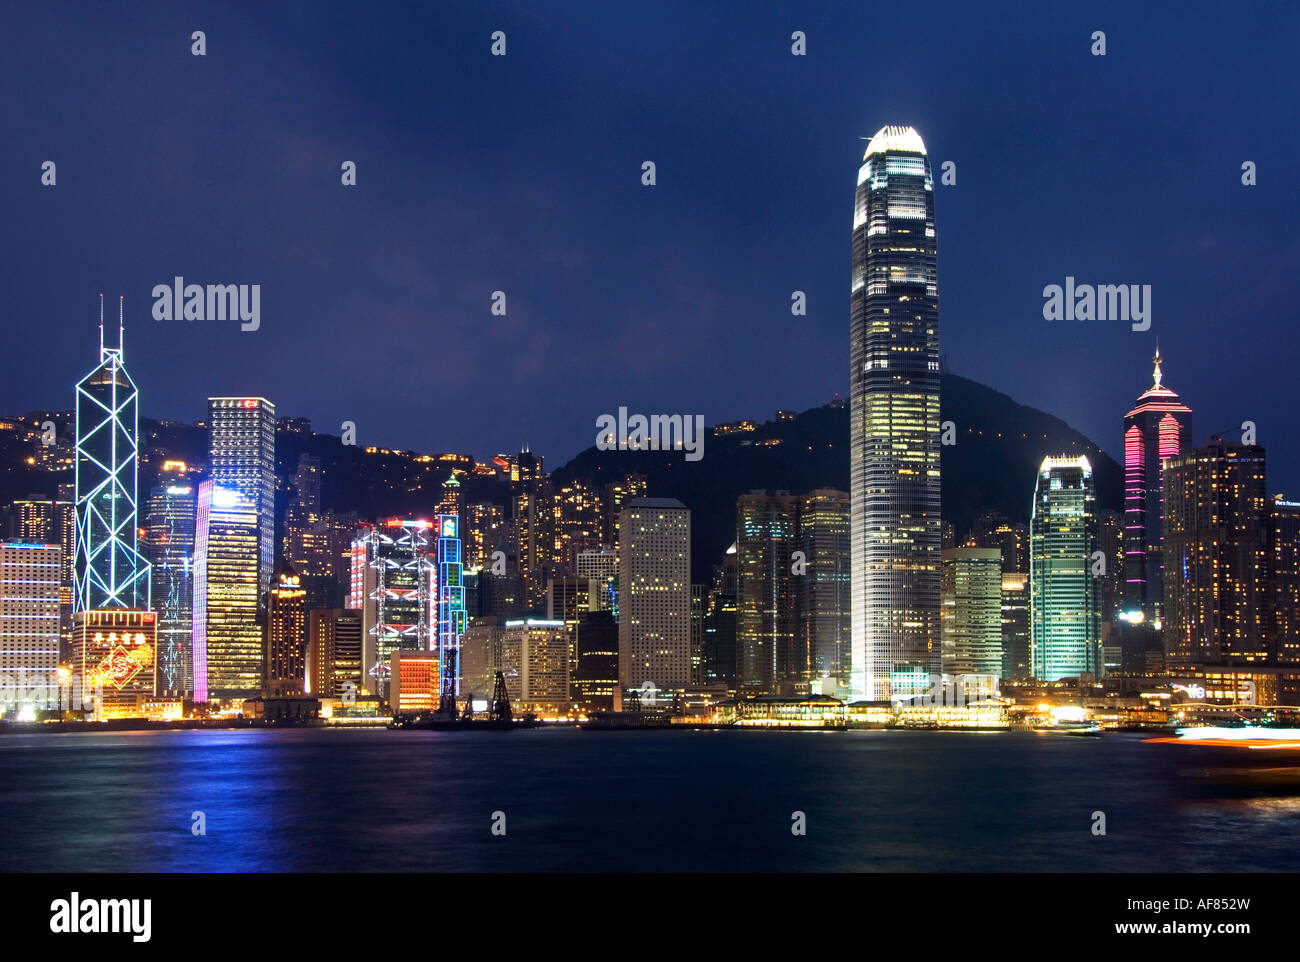 Nacht-Blick auf die berühmte Skyline von Hong Kong gesehen von der Kowloon-Seite des Hafens, Hong Kong, China, Asien Stockfoto